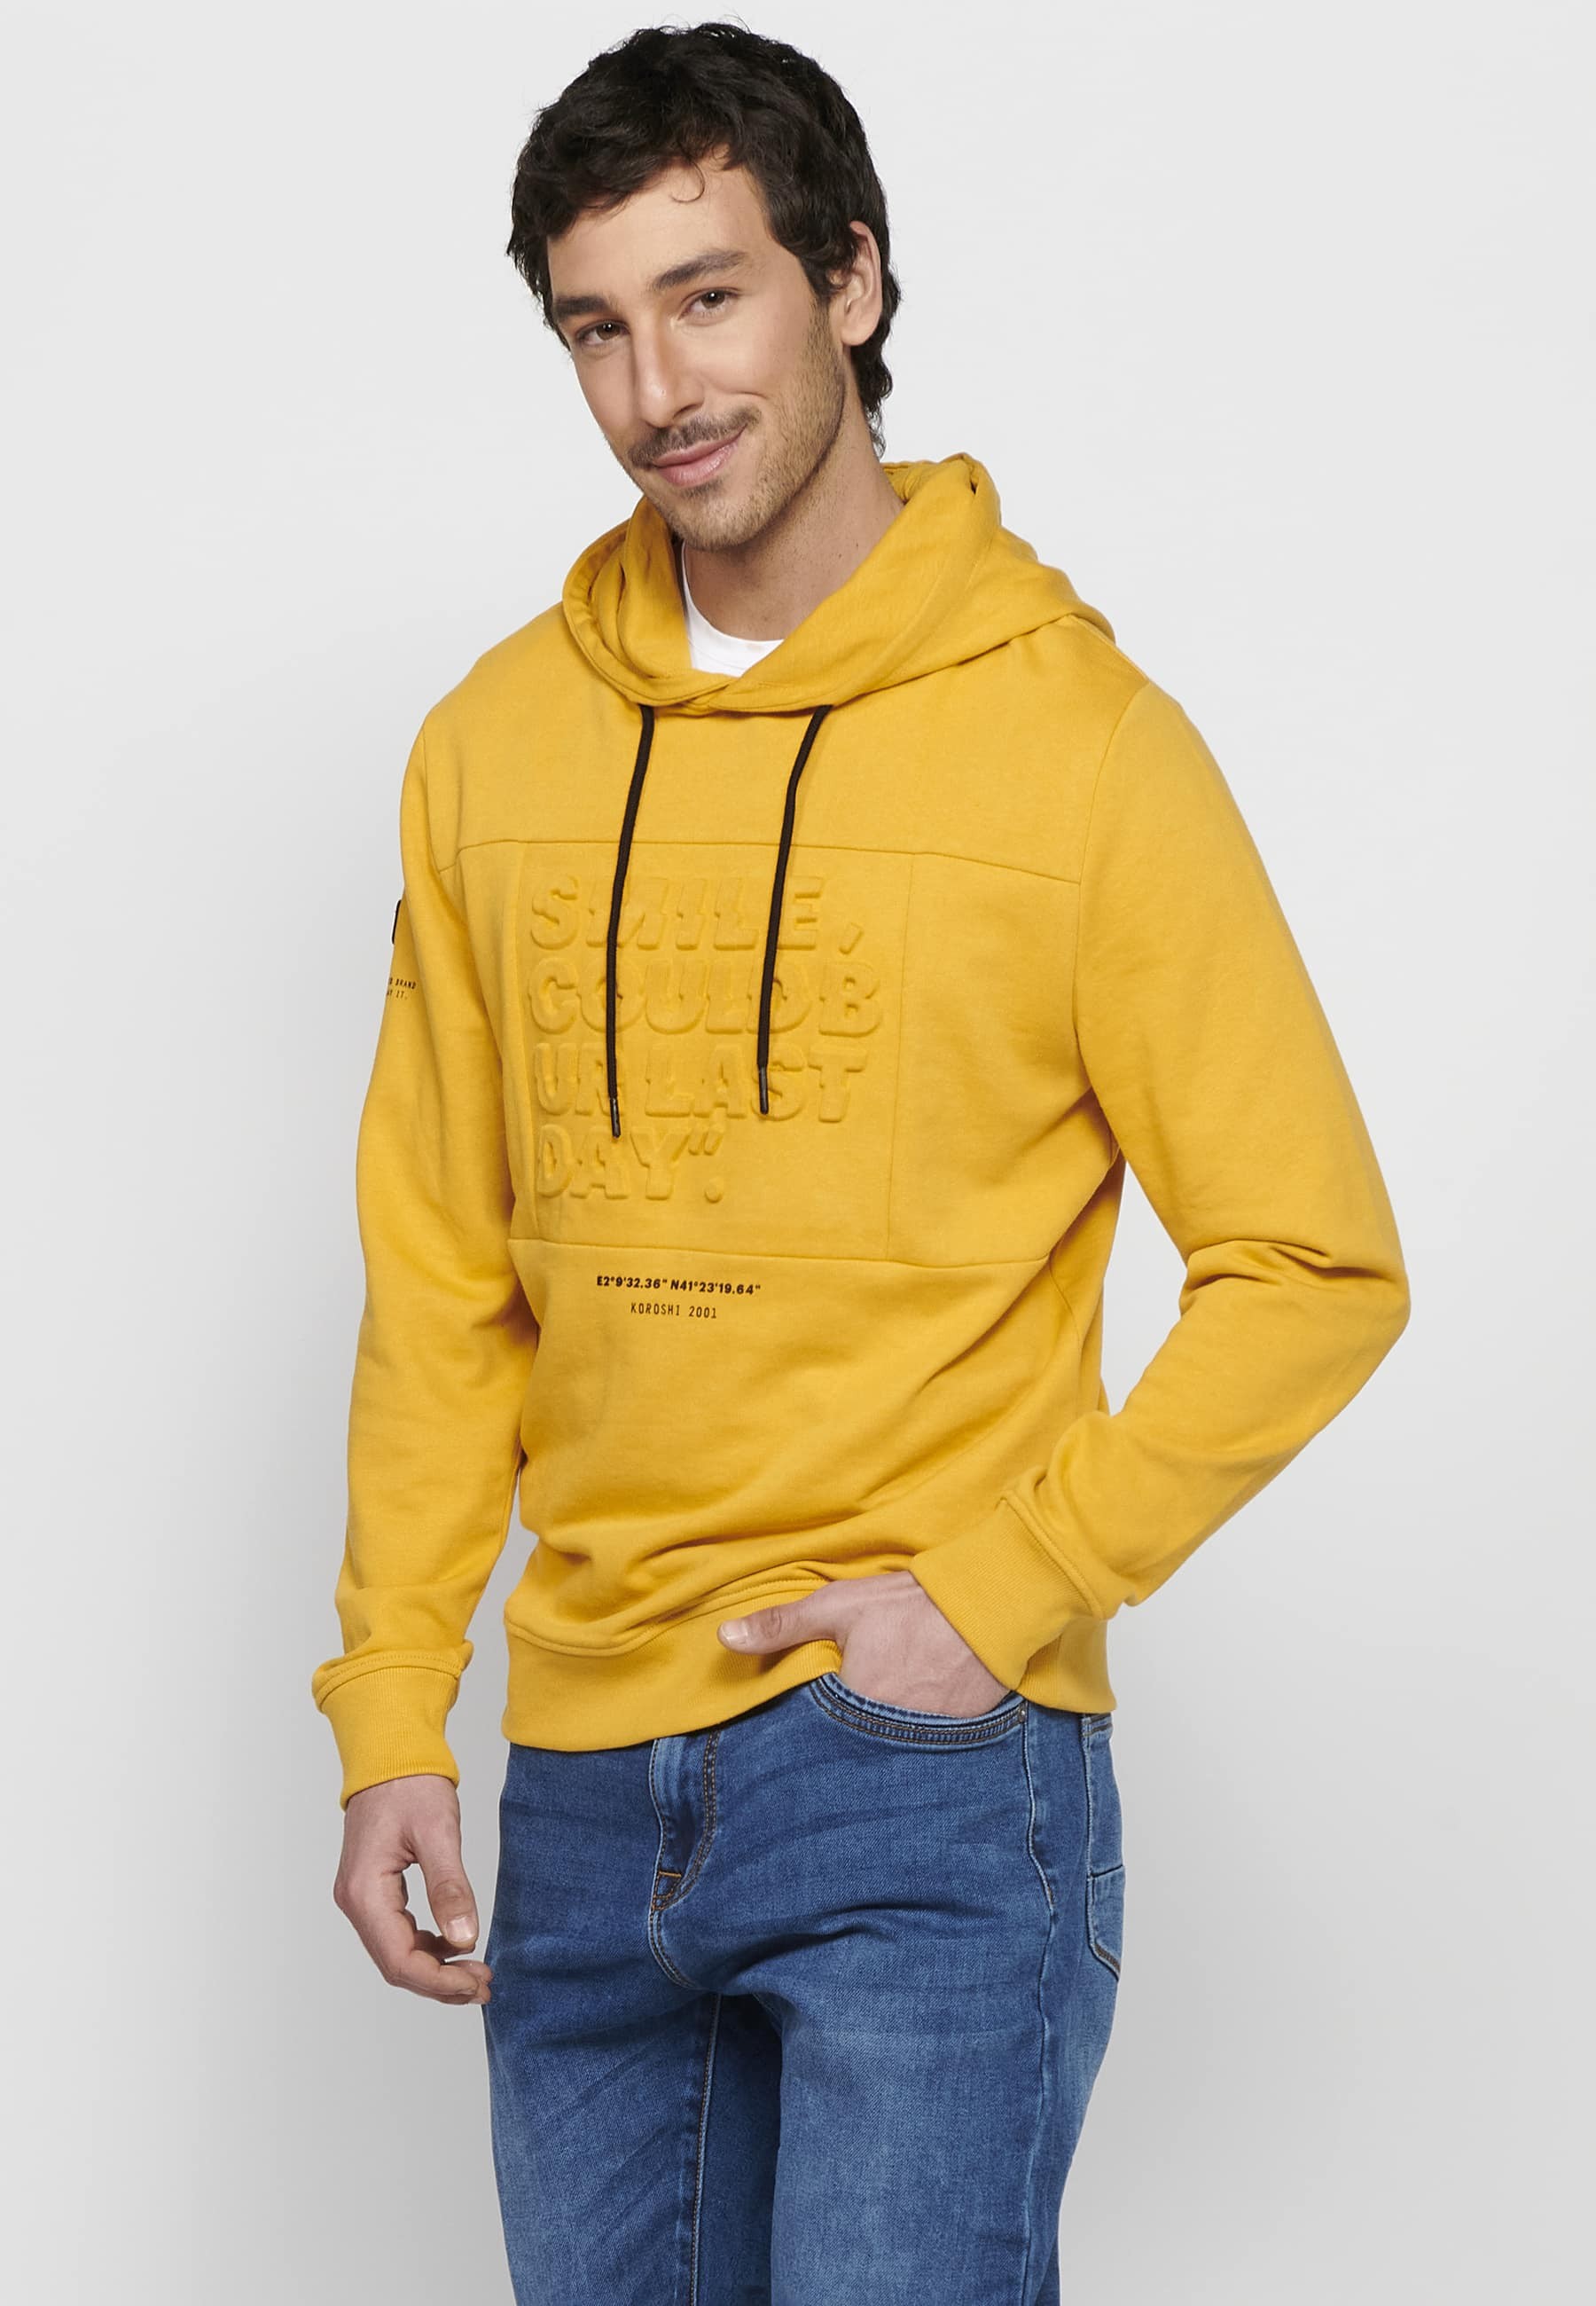 Langärmliges Sweatshirt mit gerippten Abschlüssen und Kapuzenkragen mit geprägten Buchstaben auf der Vorderseite in Gelb für Herren 3